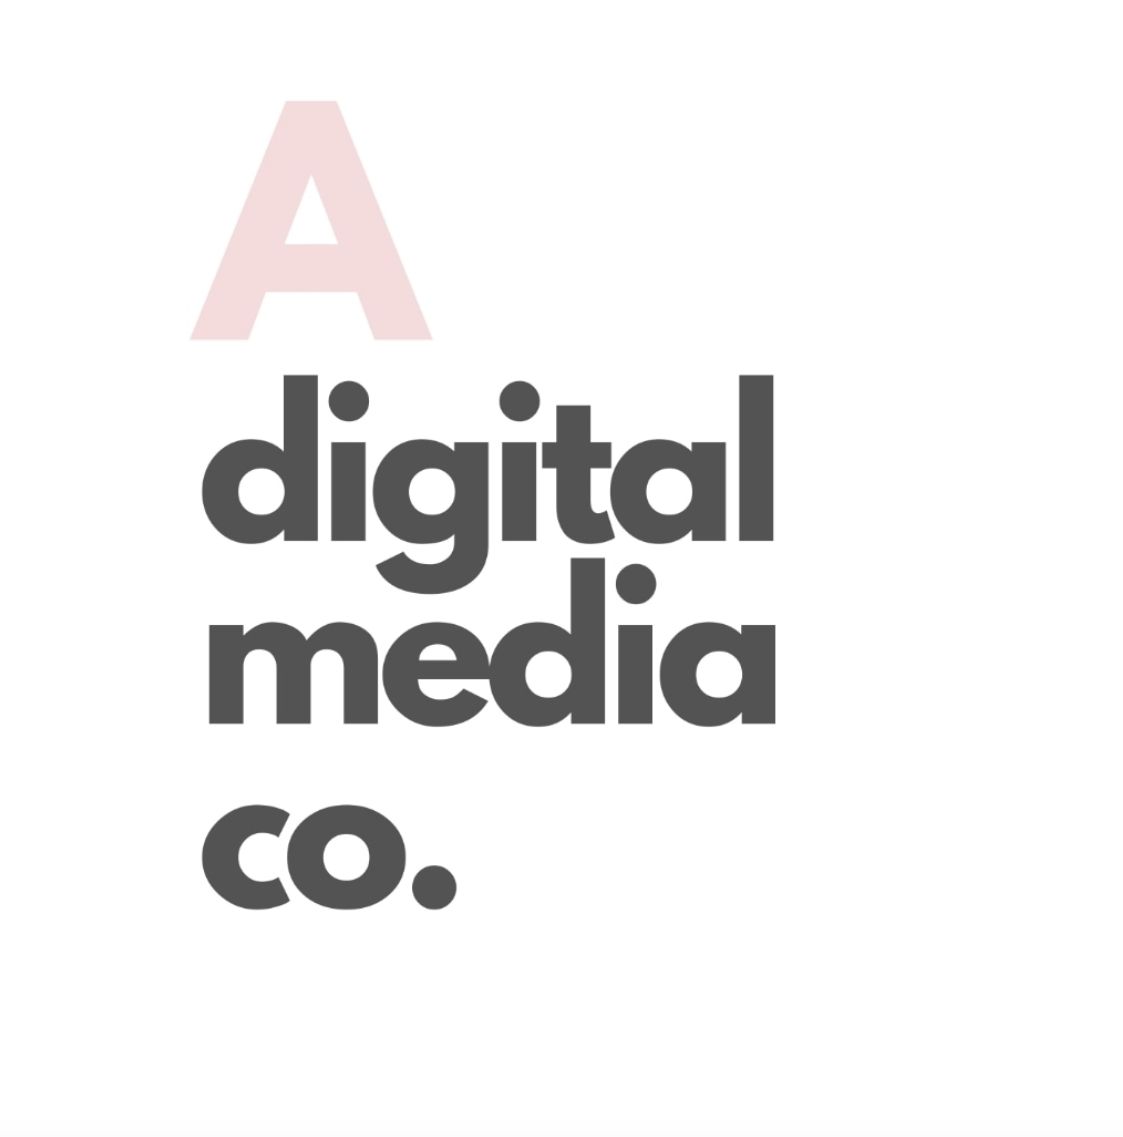 A digital media company